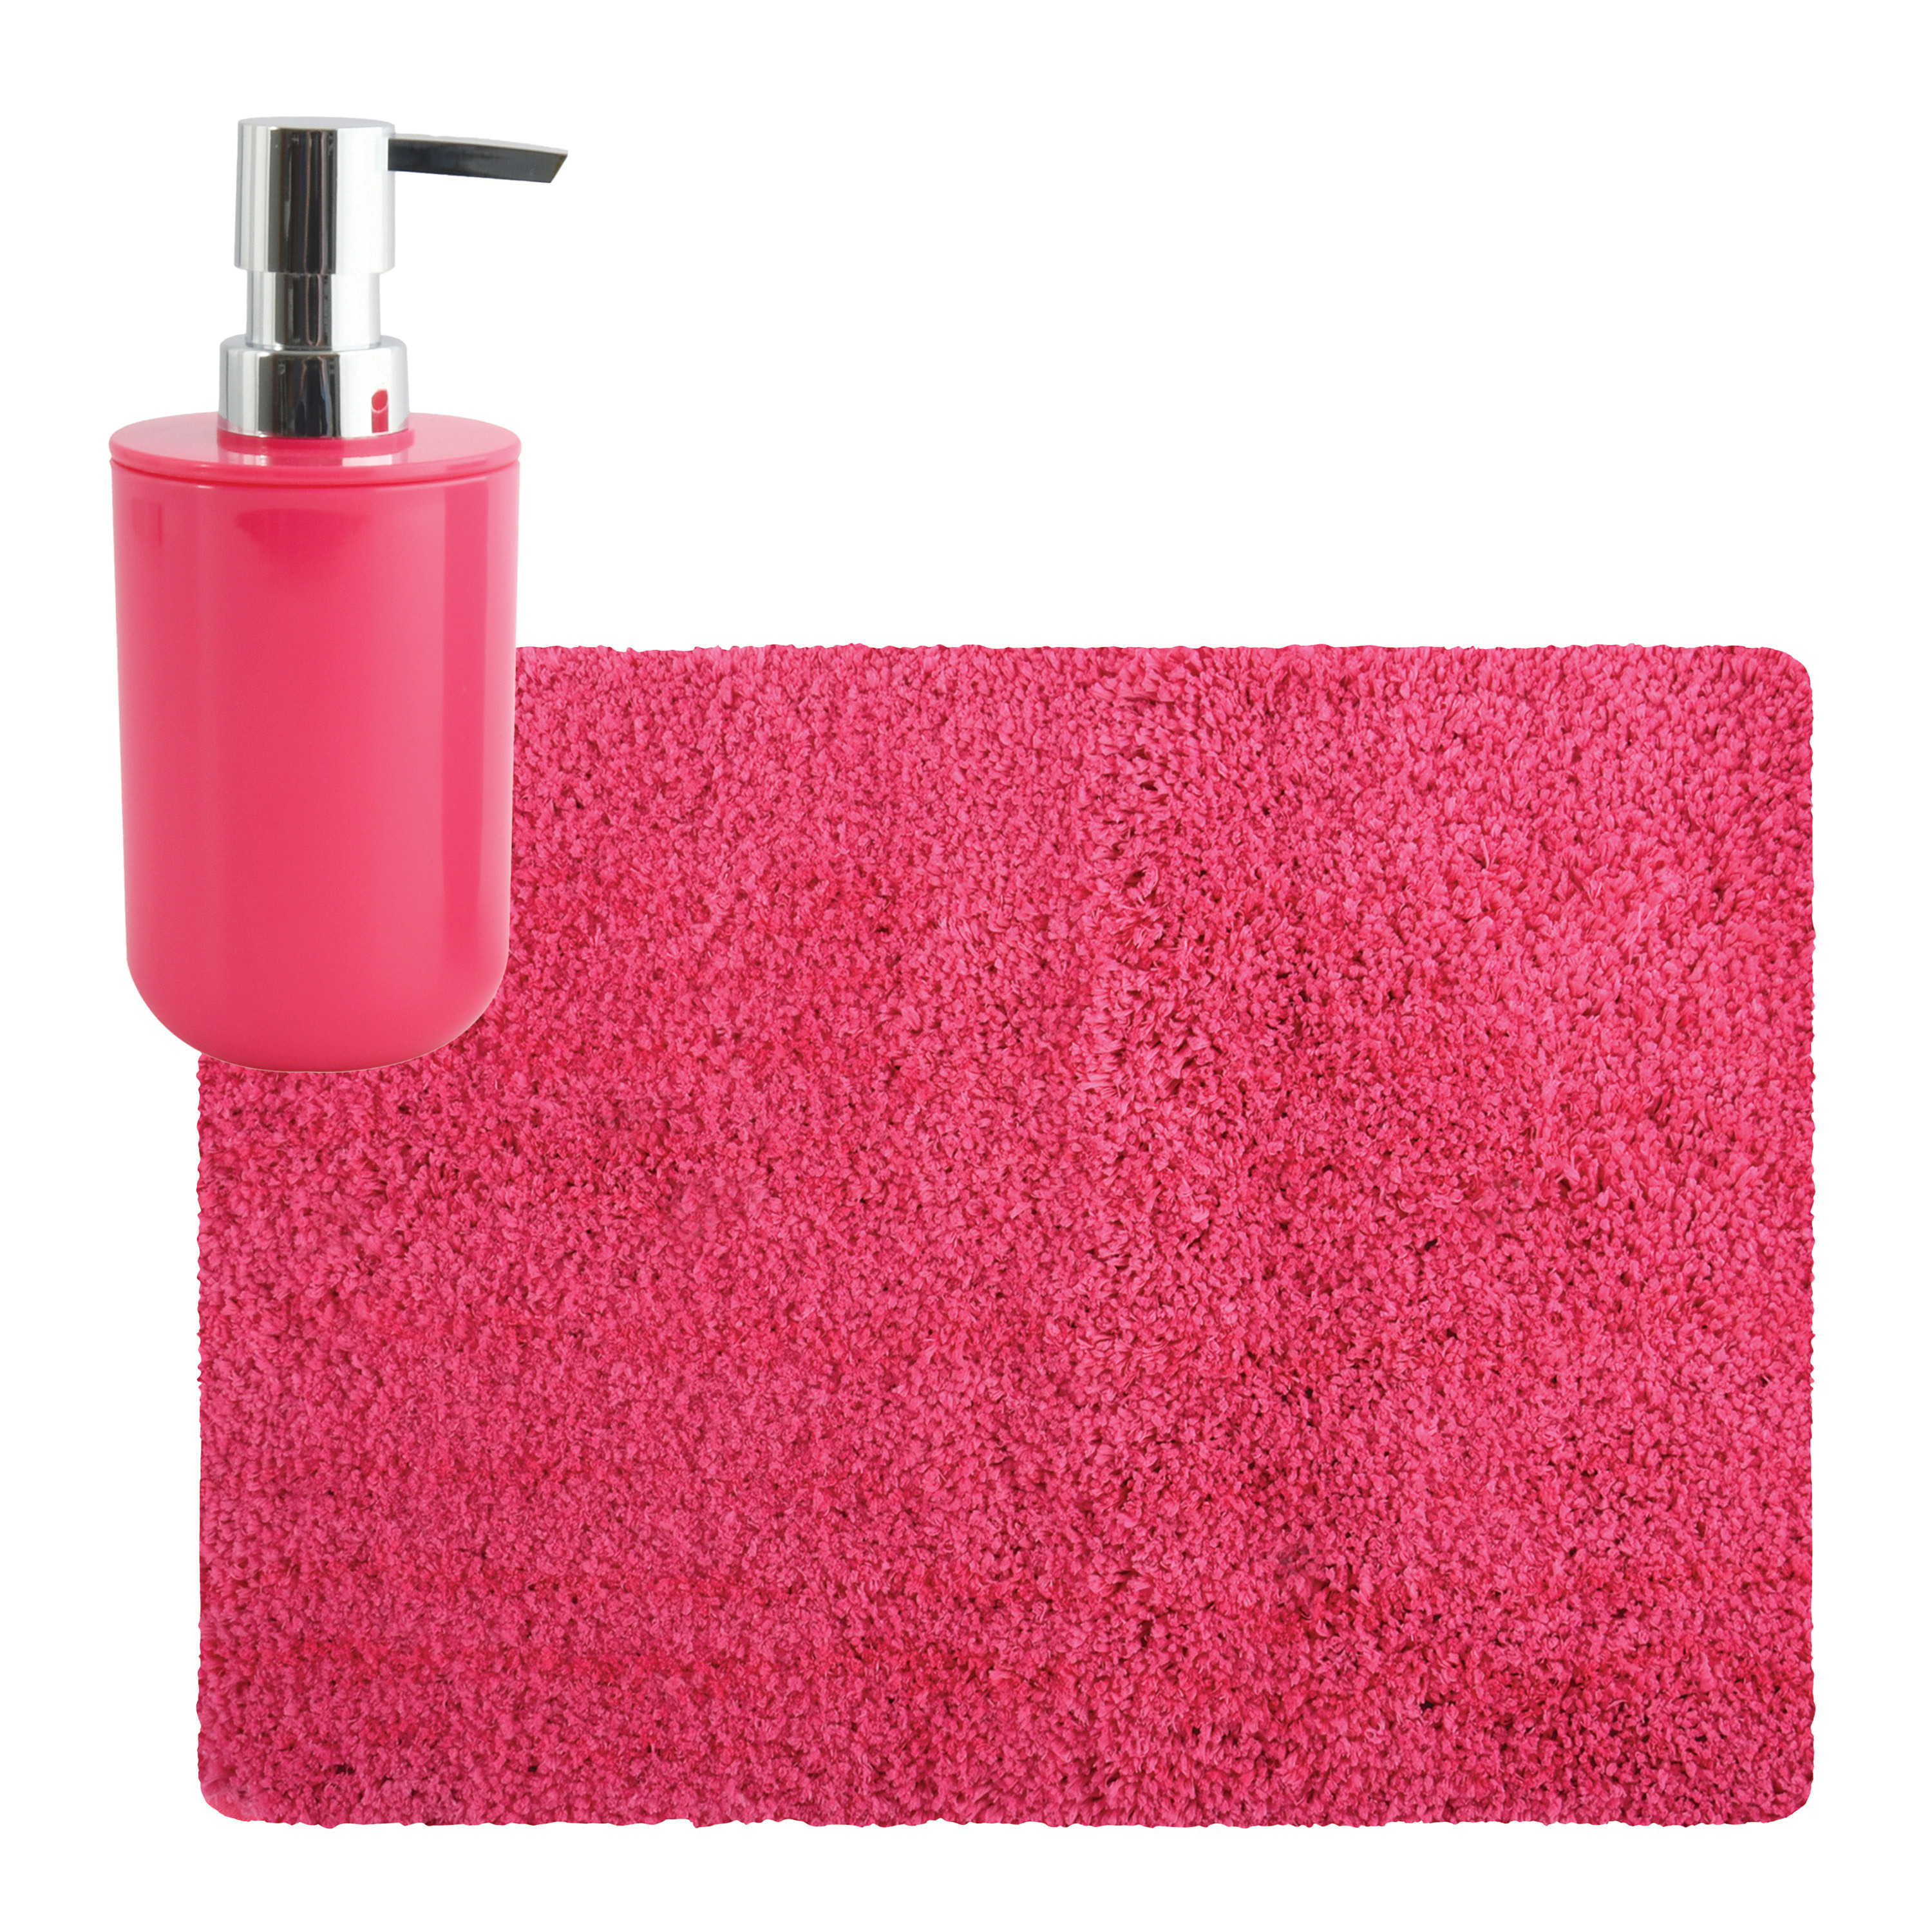 MSV badkamer droogloop tapijt Langharig 50 x 70 cm incl zeeppompje zelfde kleur fuchsia roze